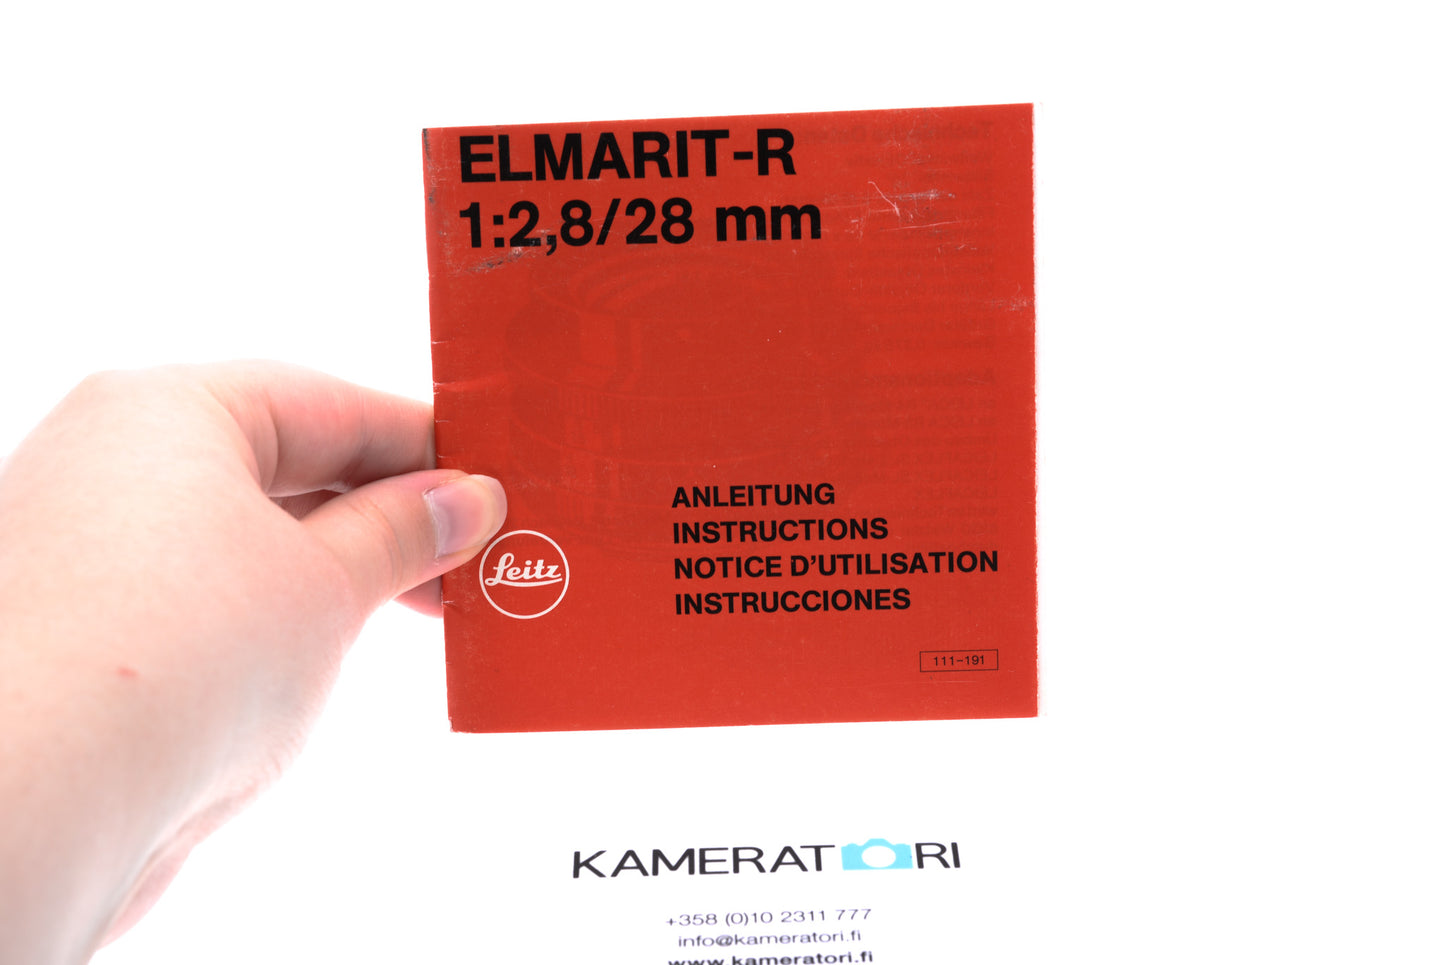 Leitz Elmarit-R 1:2,8/28mm Instruction Manual